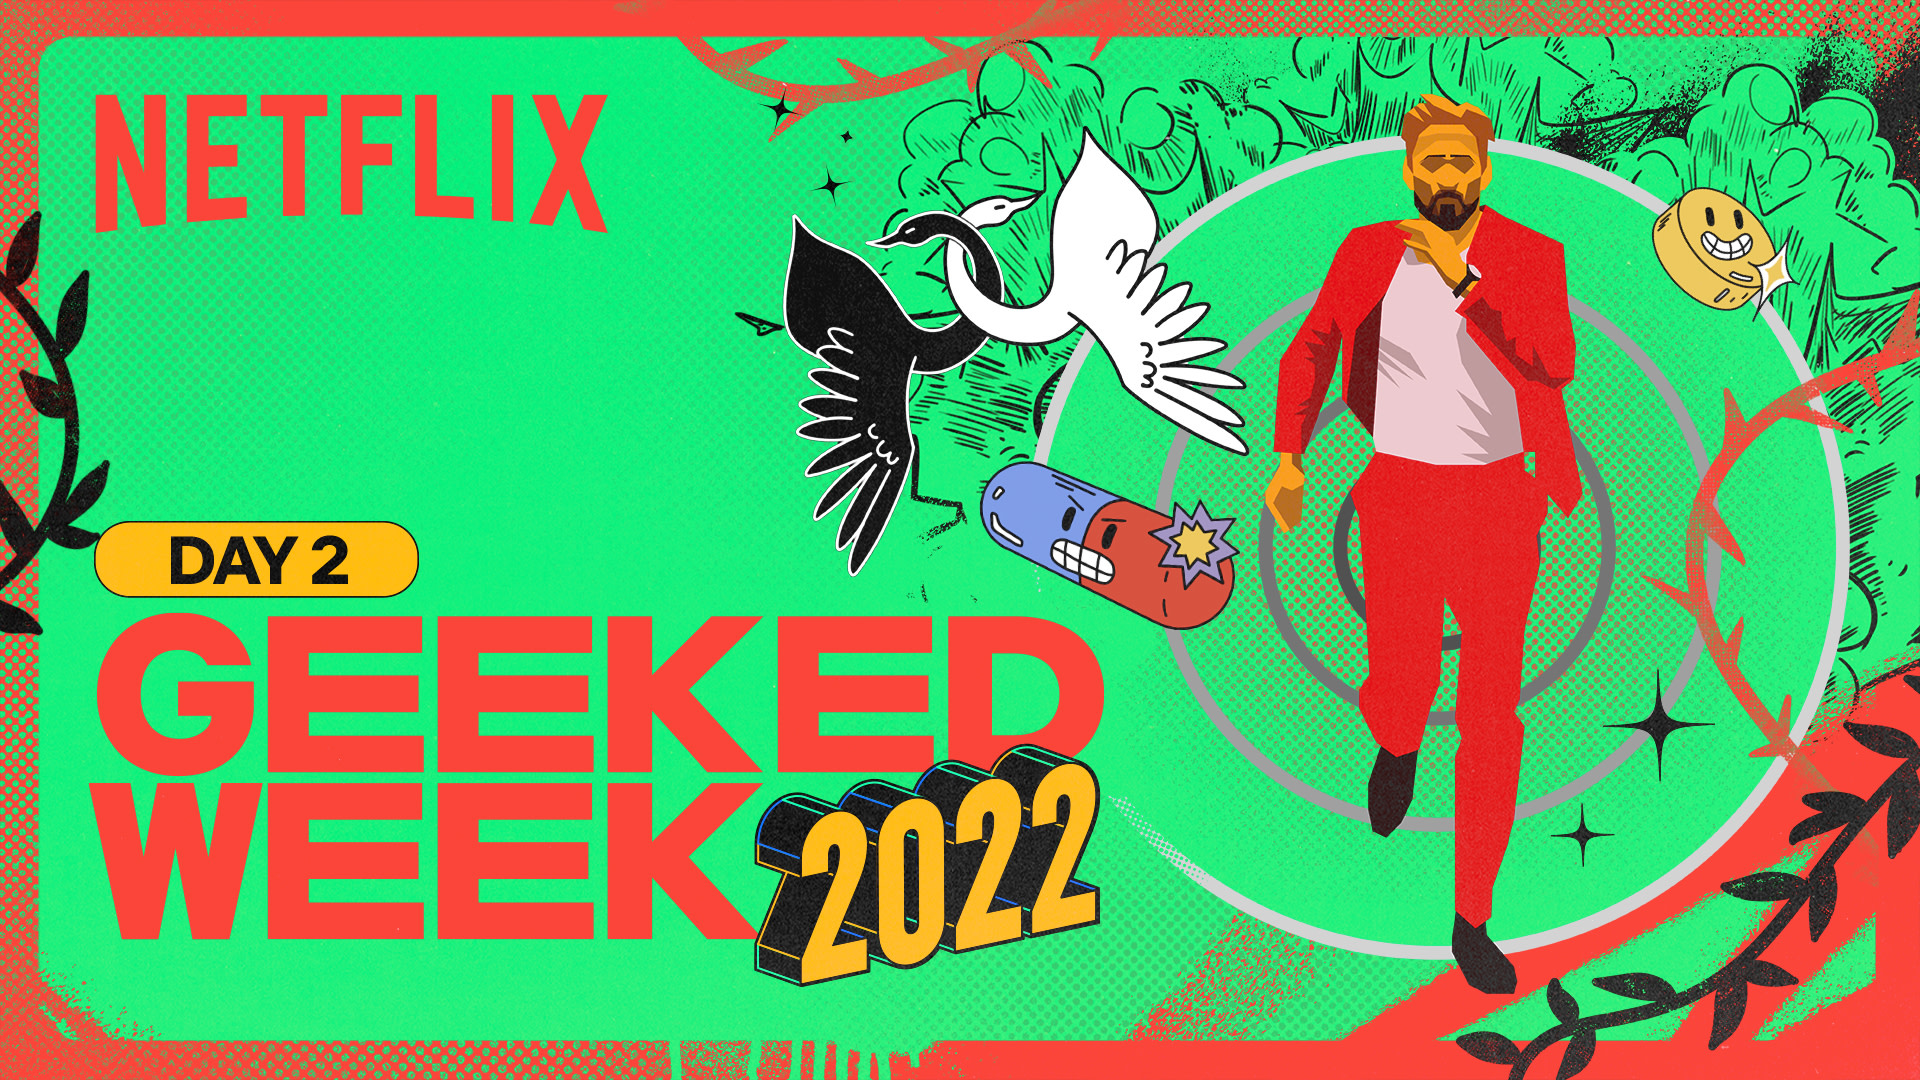 Geeked Week 2022 다시 보기: 최신 뉴스부터 미리보기 영상까지 총정리 - 영화 데이